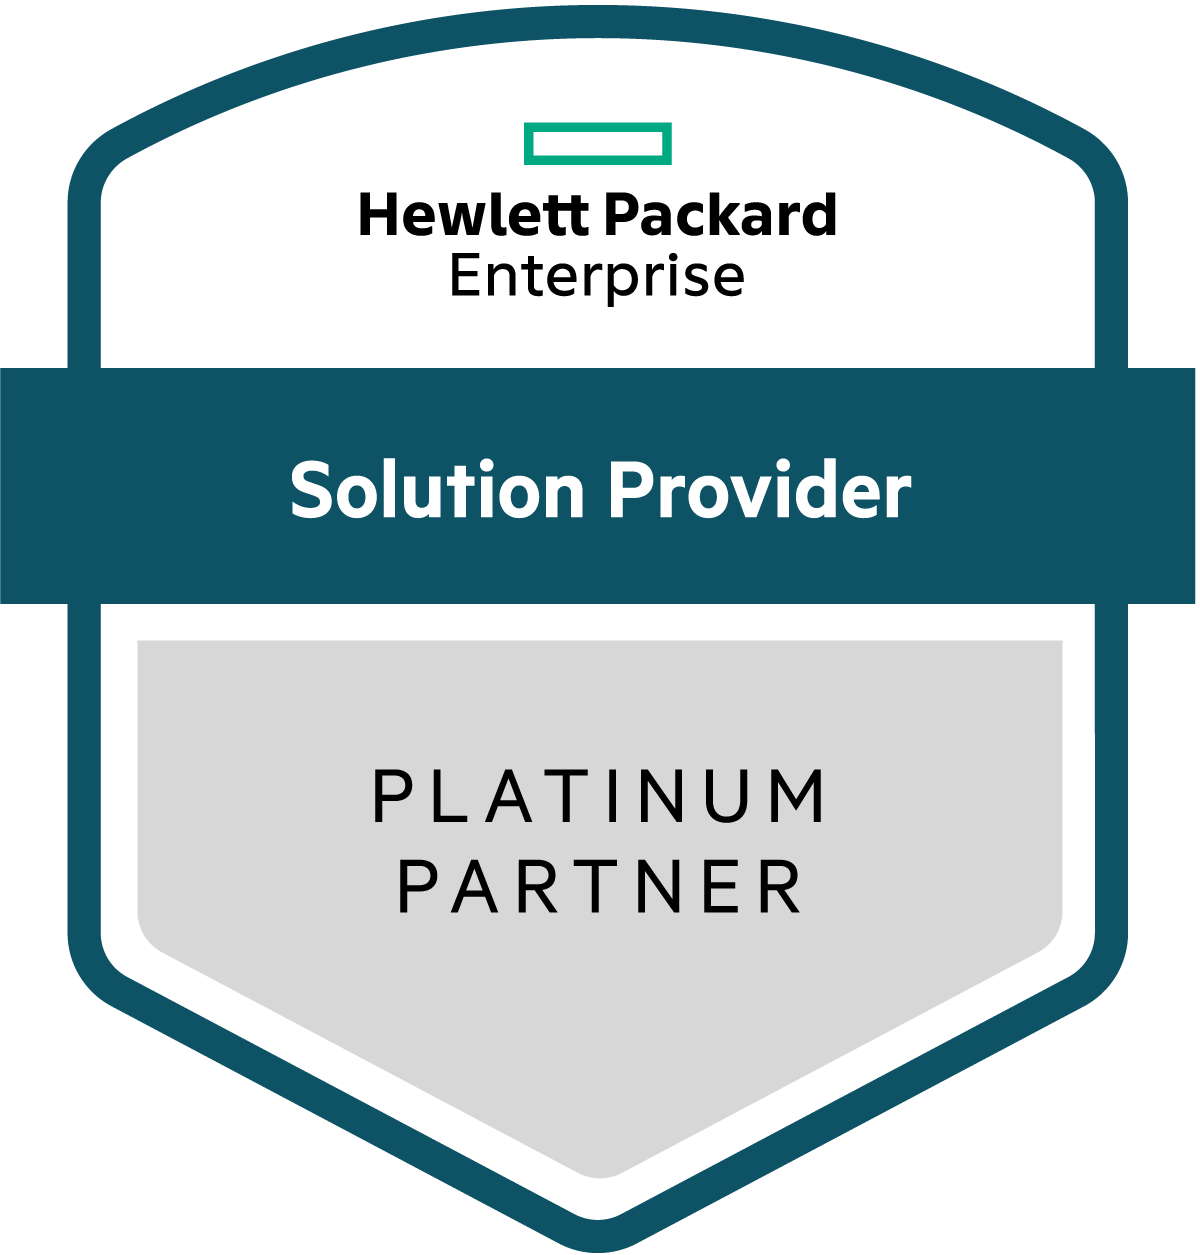 HPE Platinum Partner